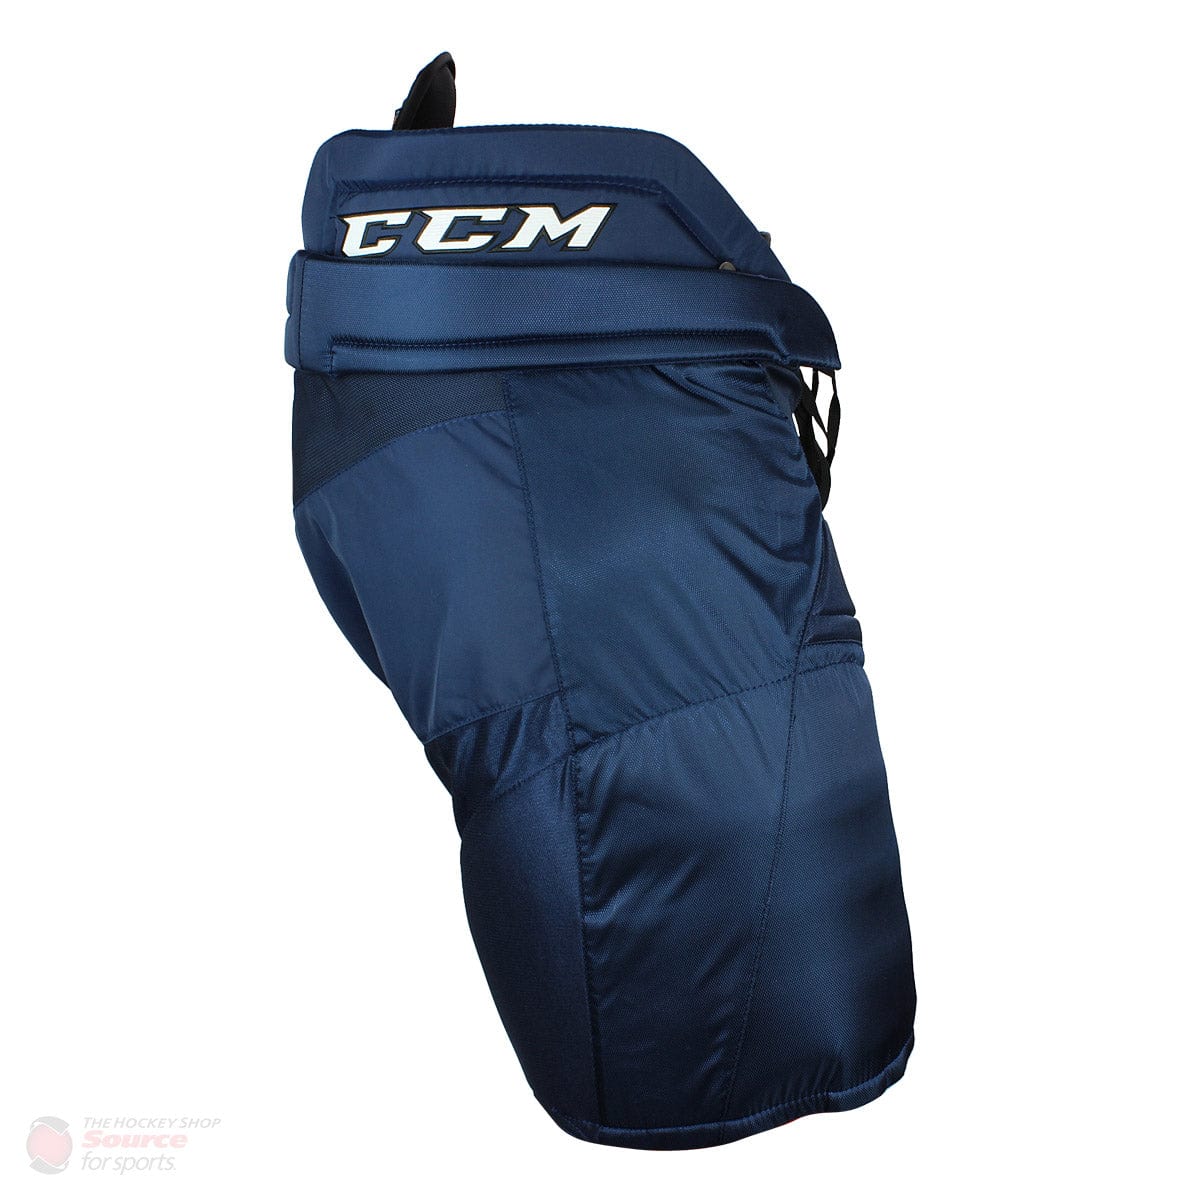 CCM Super Tacks Senior Hockey Pants